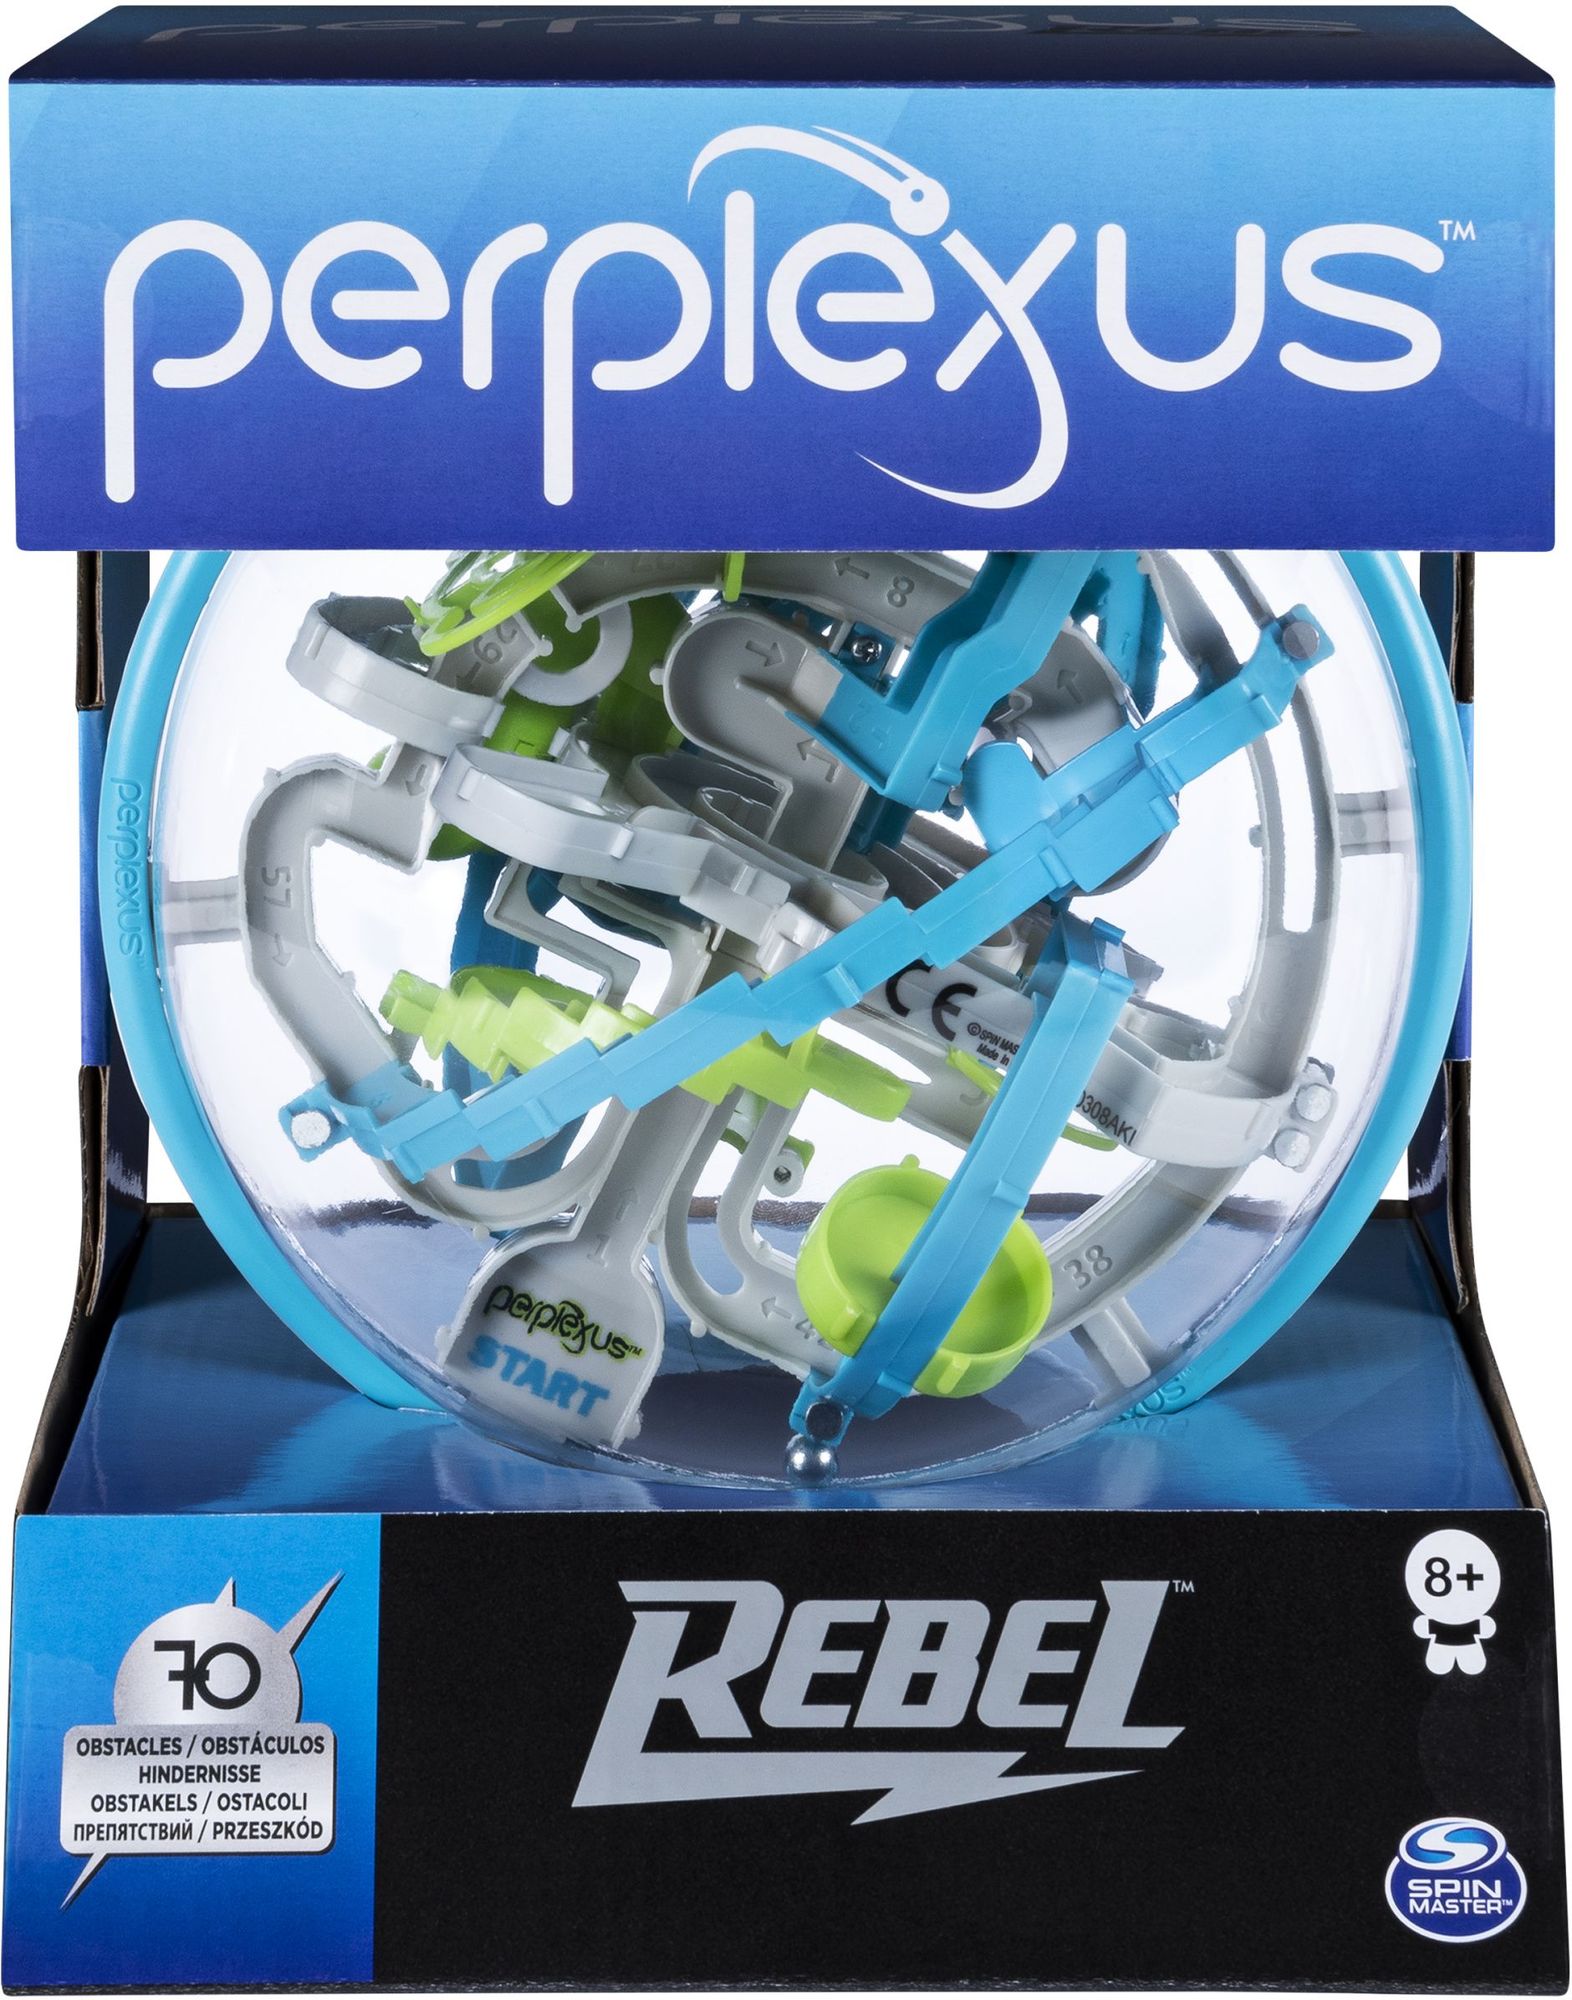 Perplexus Beast - das 3D Kugellabyrinth für Perplexus-Fans